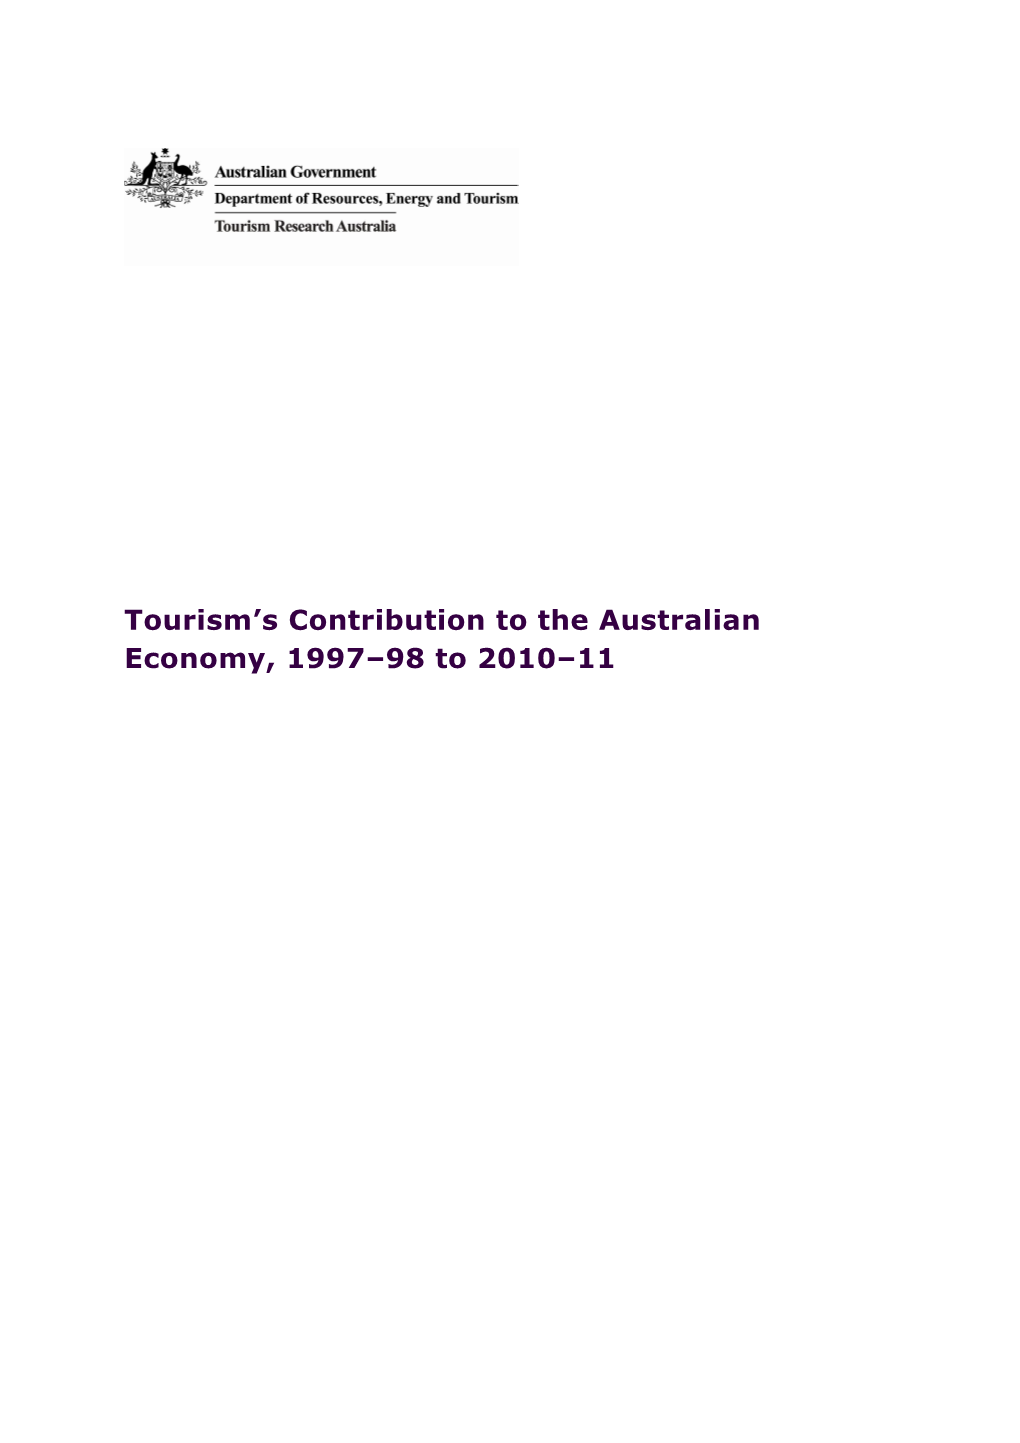 Tourism S Contribution to the Australian Economy, 1997 98 to 2010 11